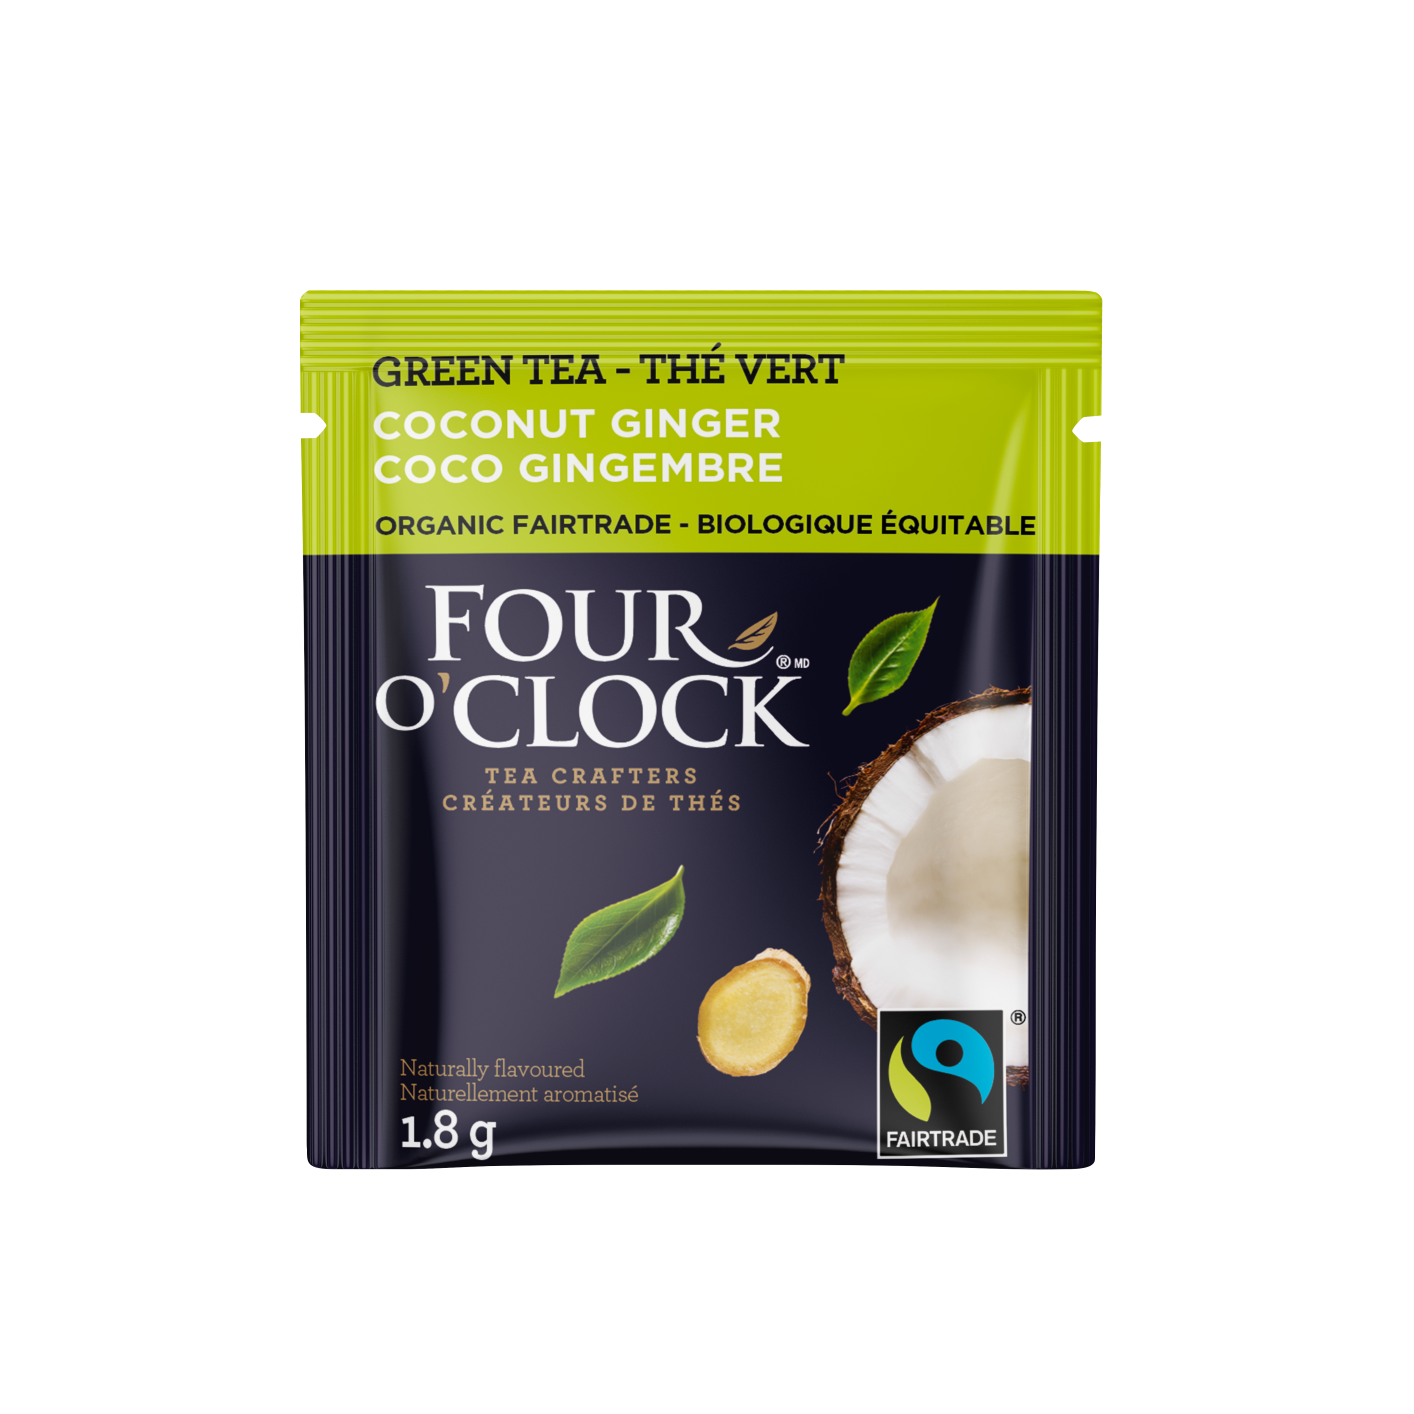 Coconut Ginger Organic Fairtrade Green Tea